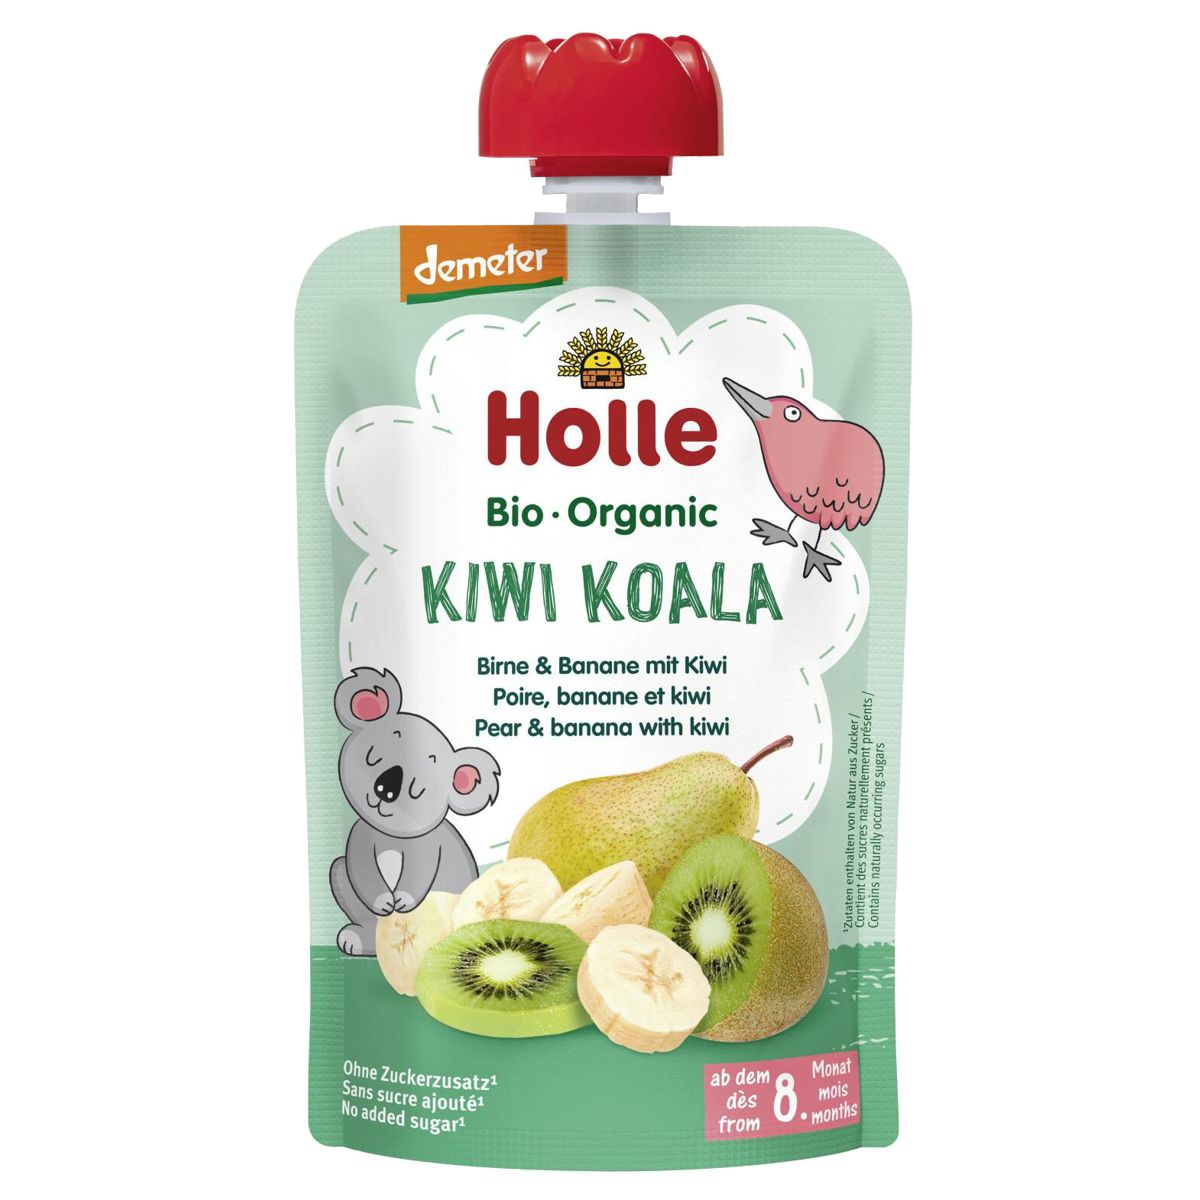 Holle_Kiwi_Koala_Pouchy_Birne_Banane_Kiwi_kaufen